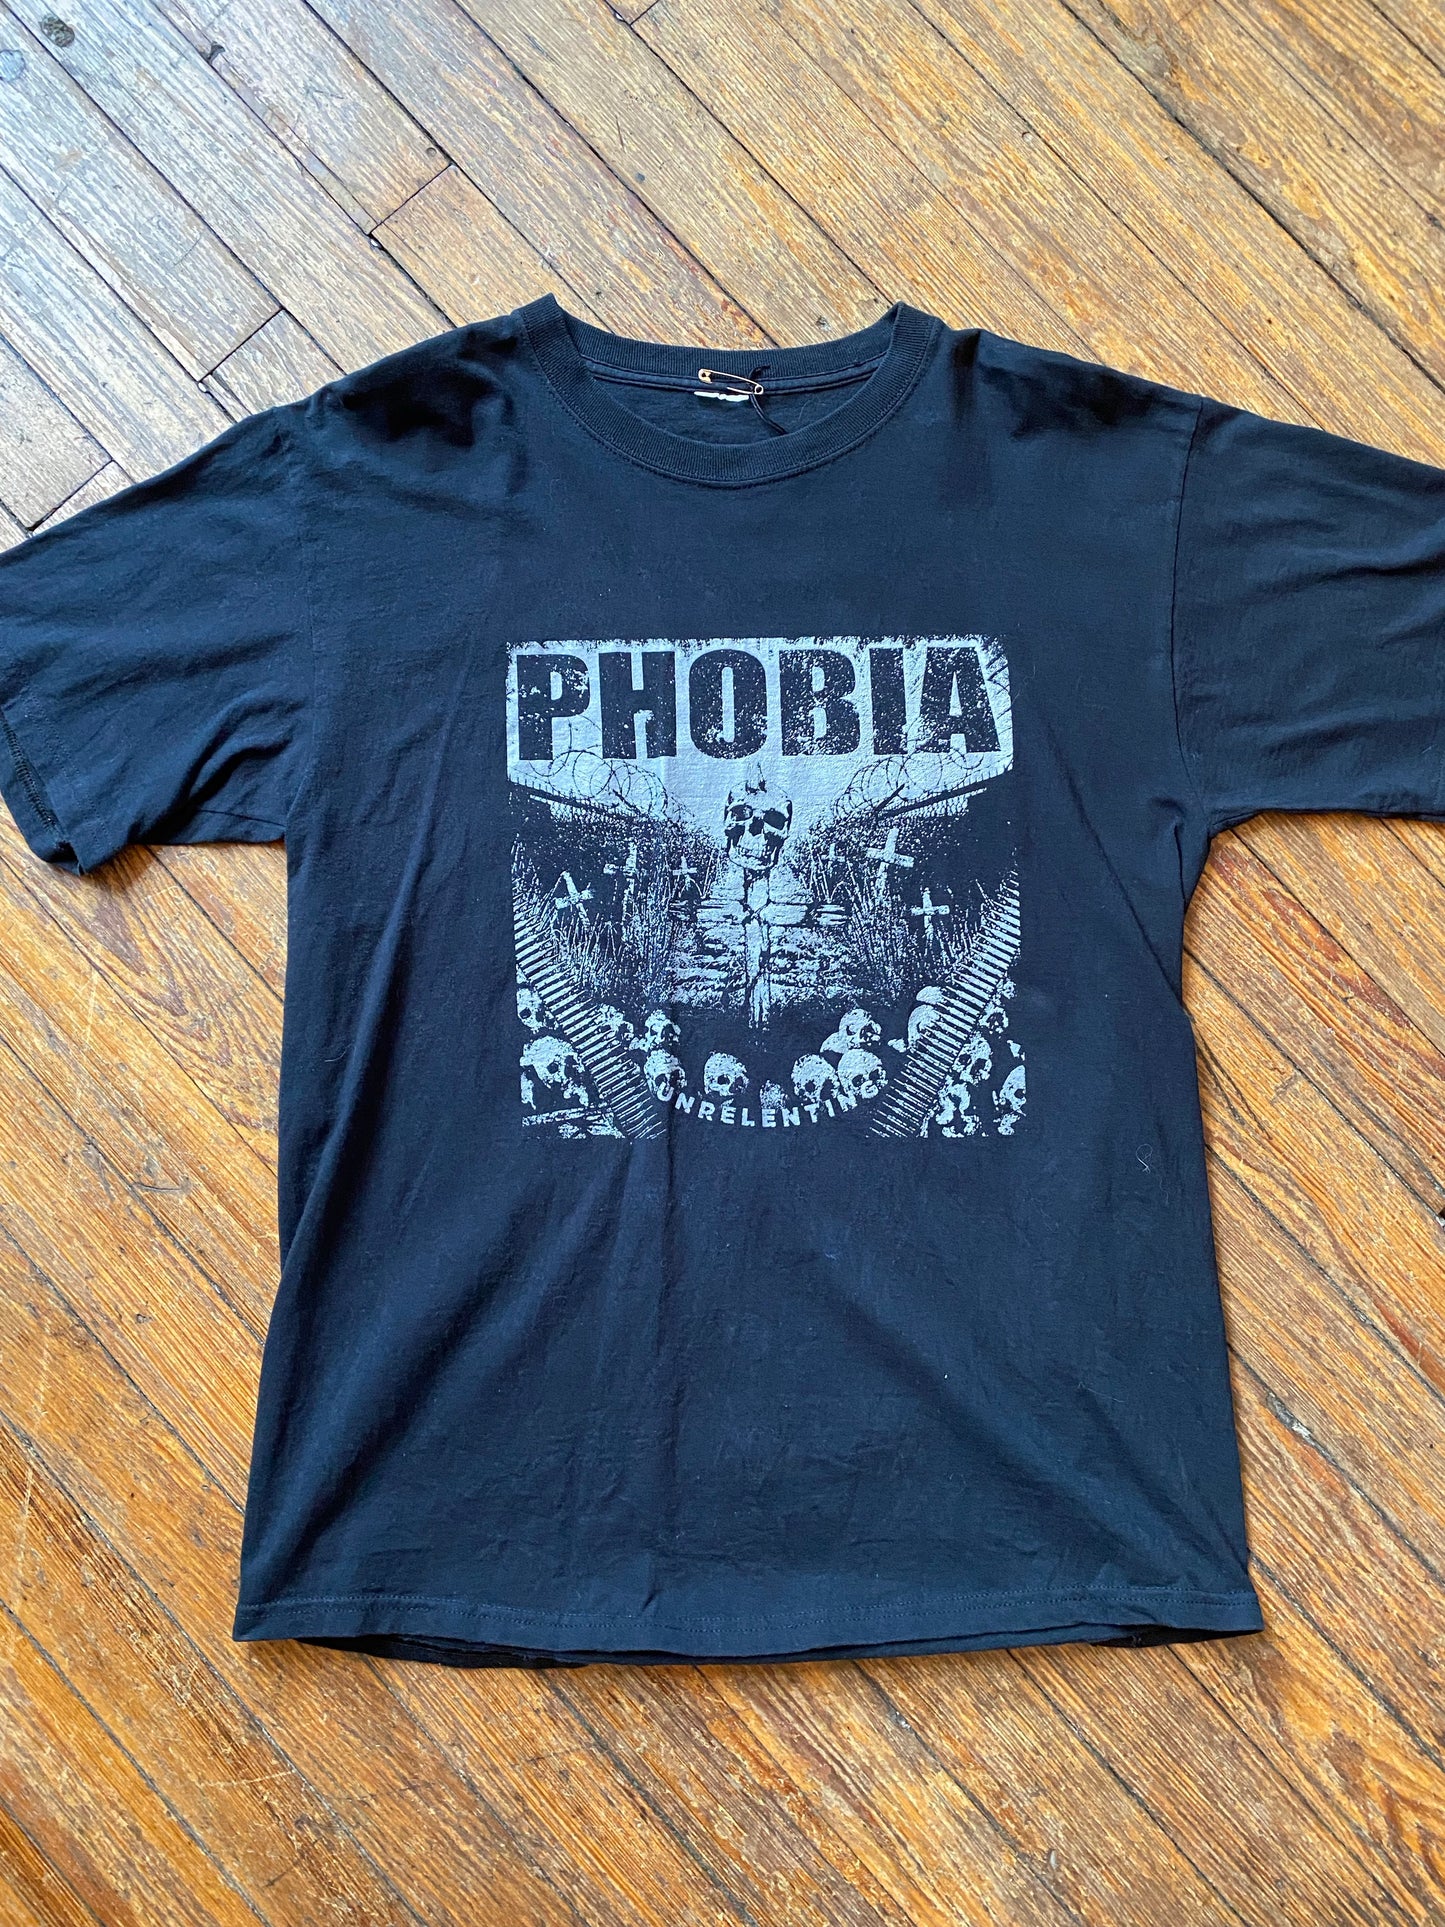 2010 Phobia Unrelenting T-Shirt